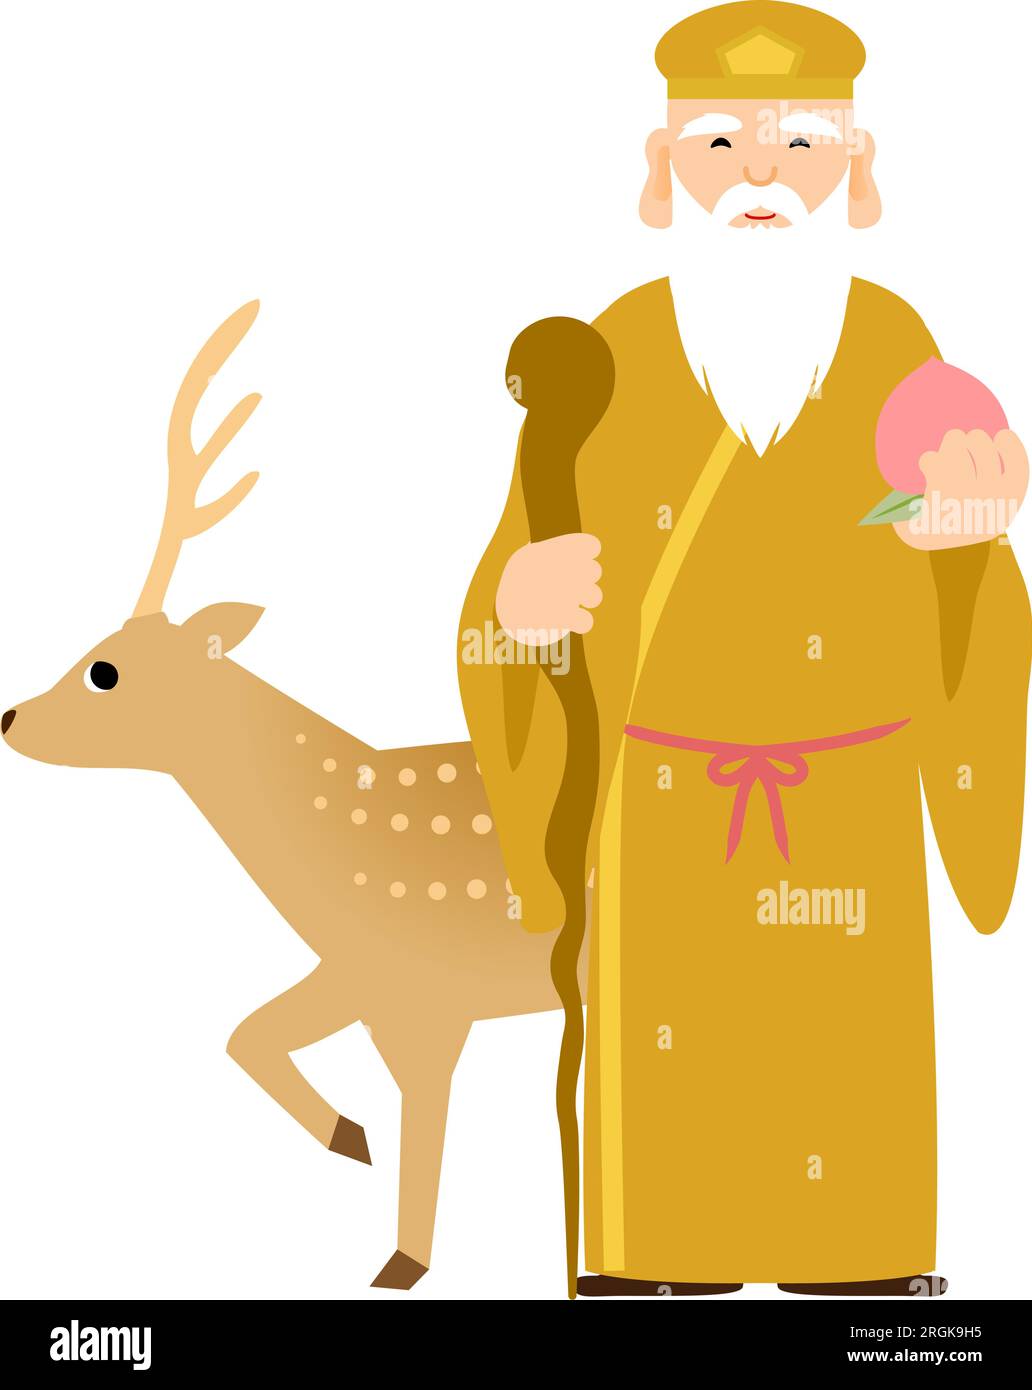 Süße und einfache Illustration von sieben Glücksgöttern Jurojin, Vektor-Illustarion Stock Vektor